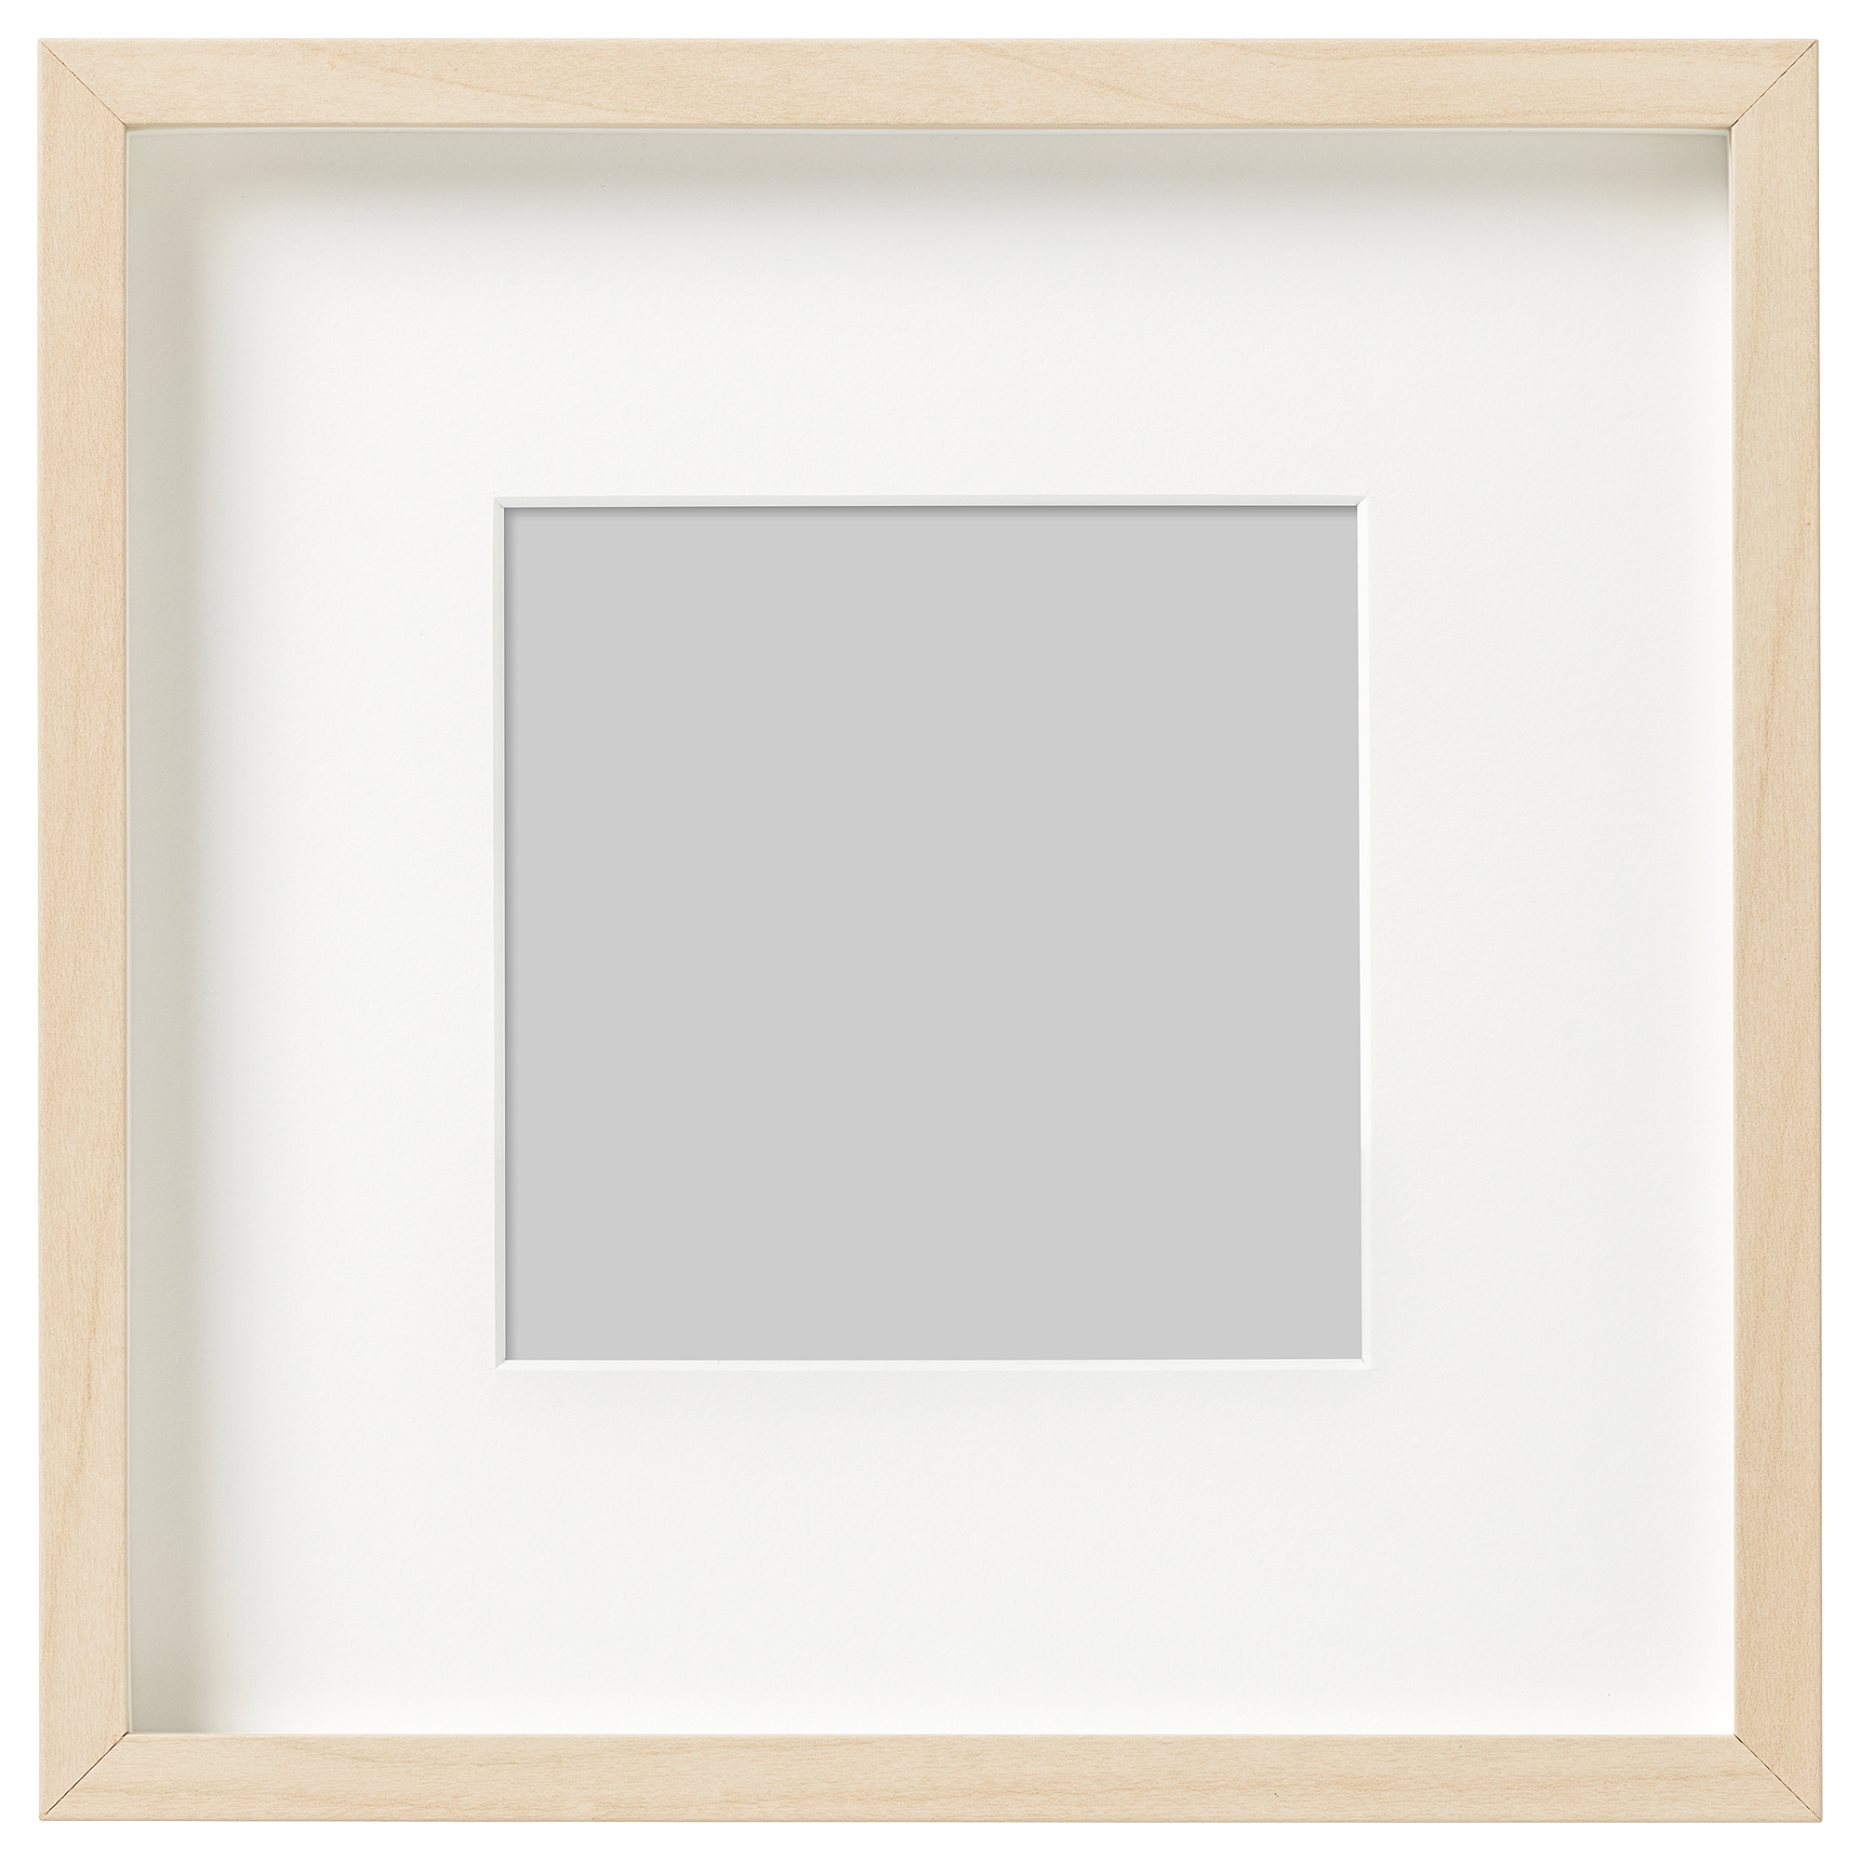 HOVSTA, frame, 23x23 cm, 803.657.55